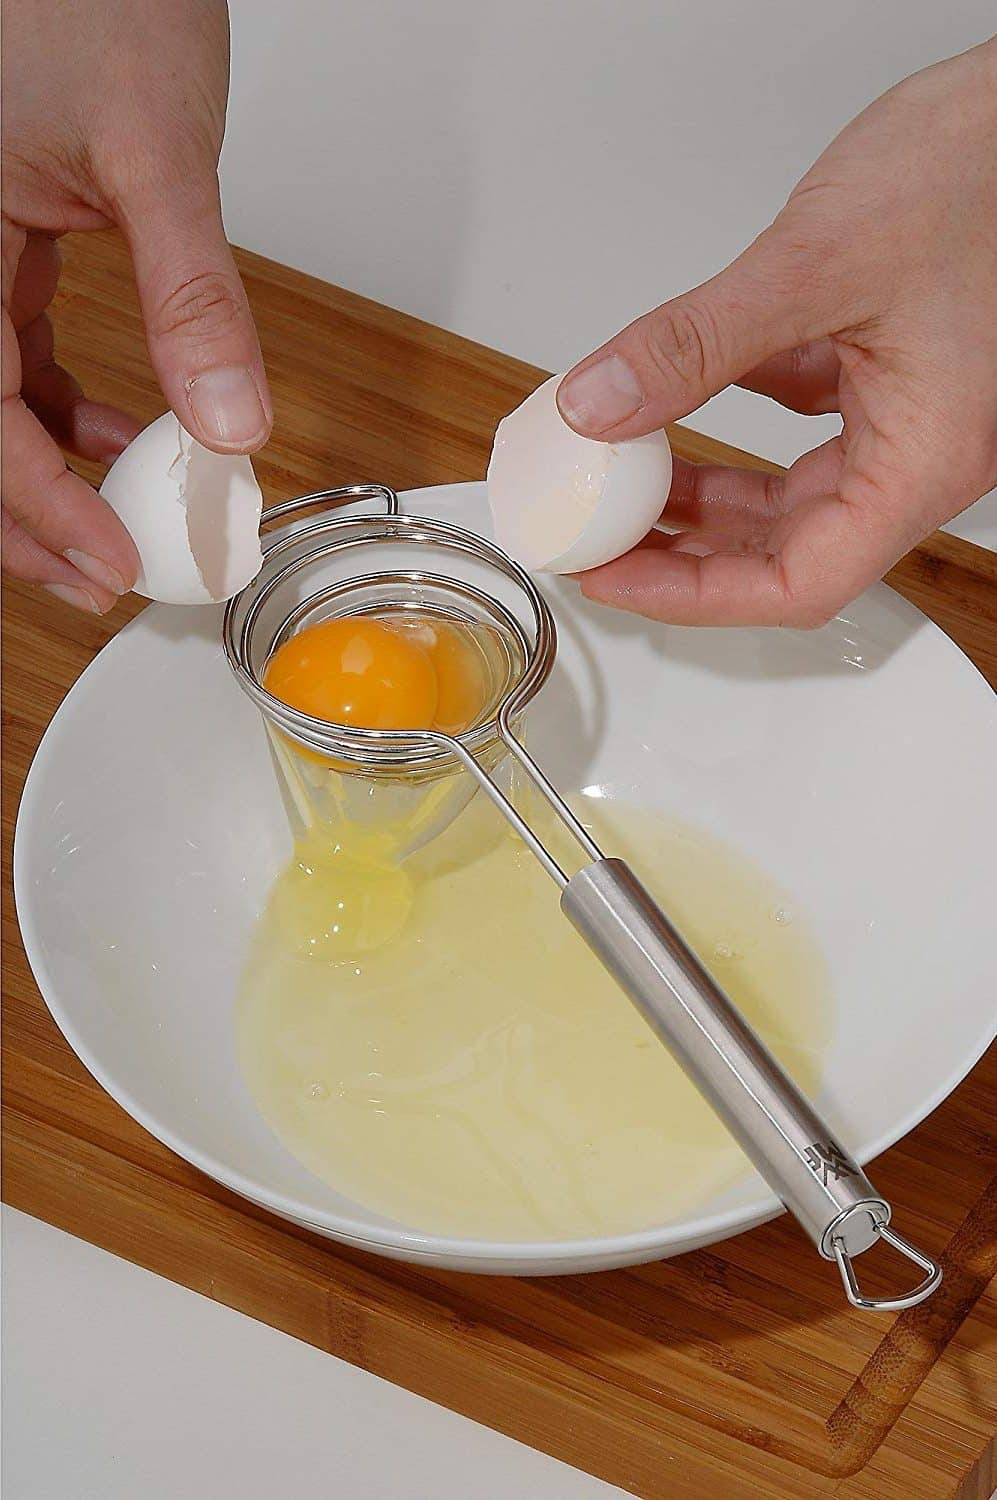 Сепаратор для отделение желтка яйца от белка | Как отделить желток яйца от белка: более 15 способов и приспособлений